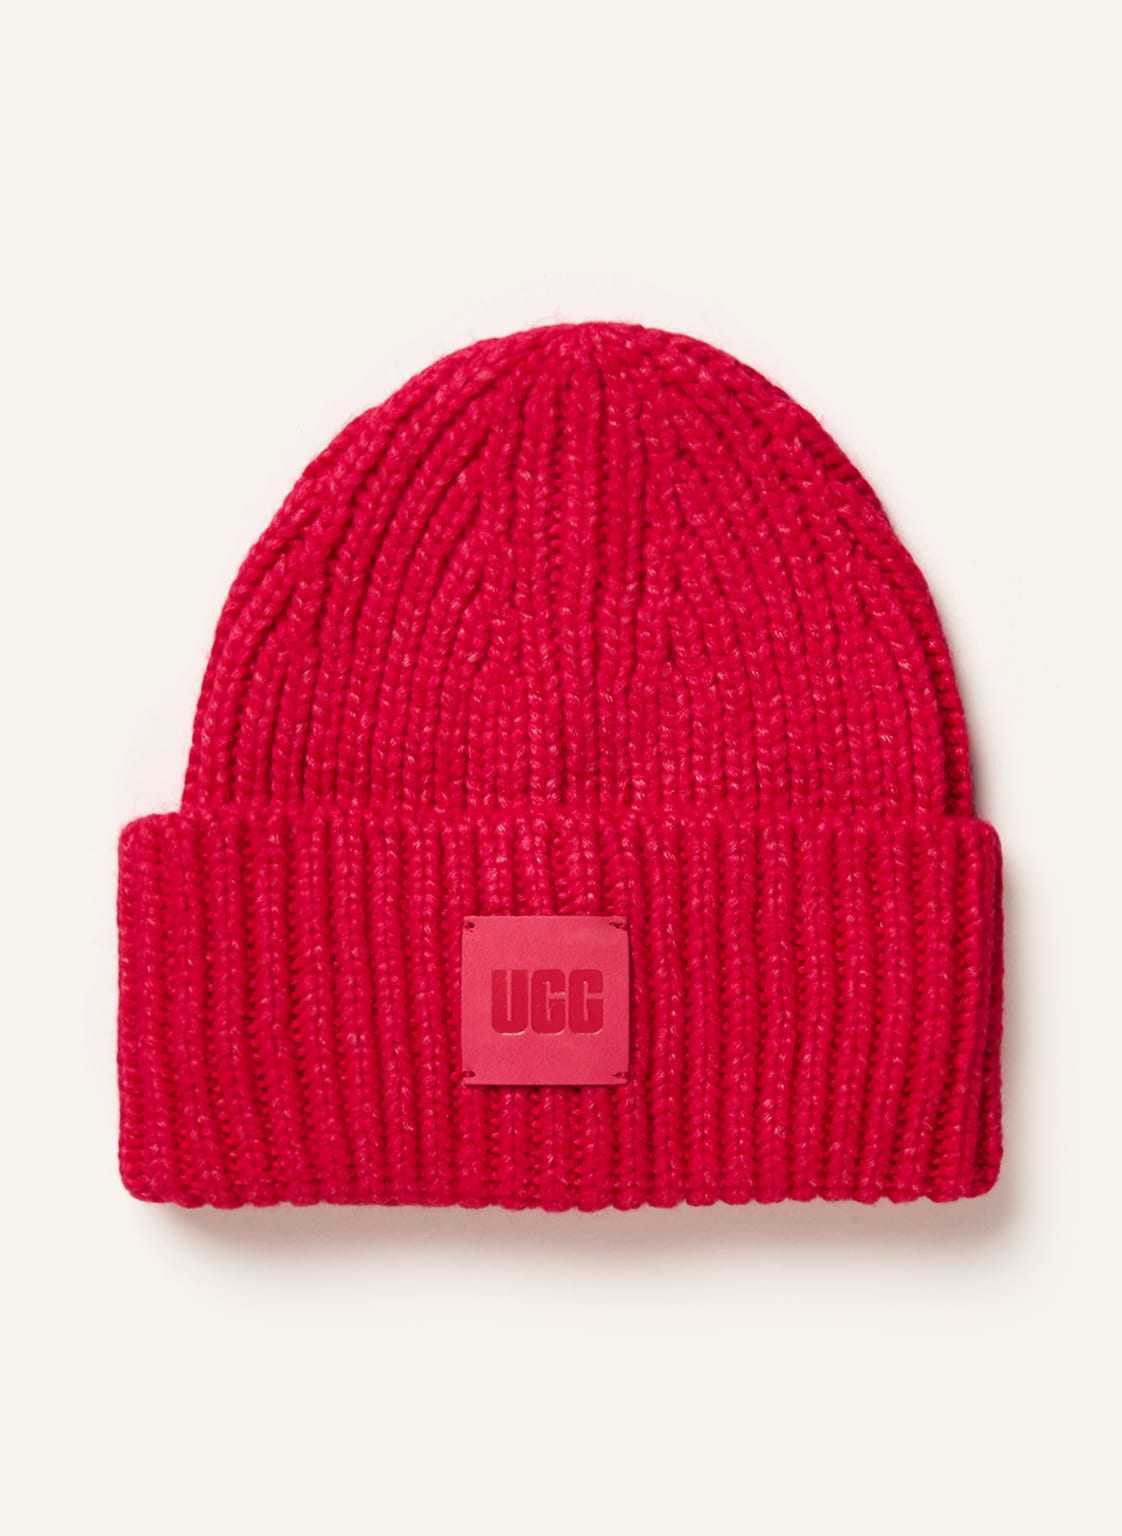 Ugg Mütze pink von Ugg